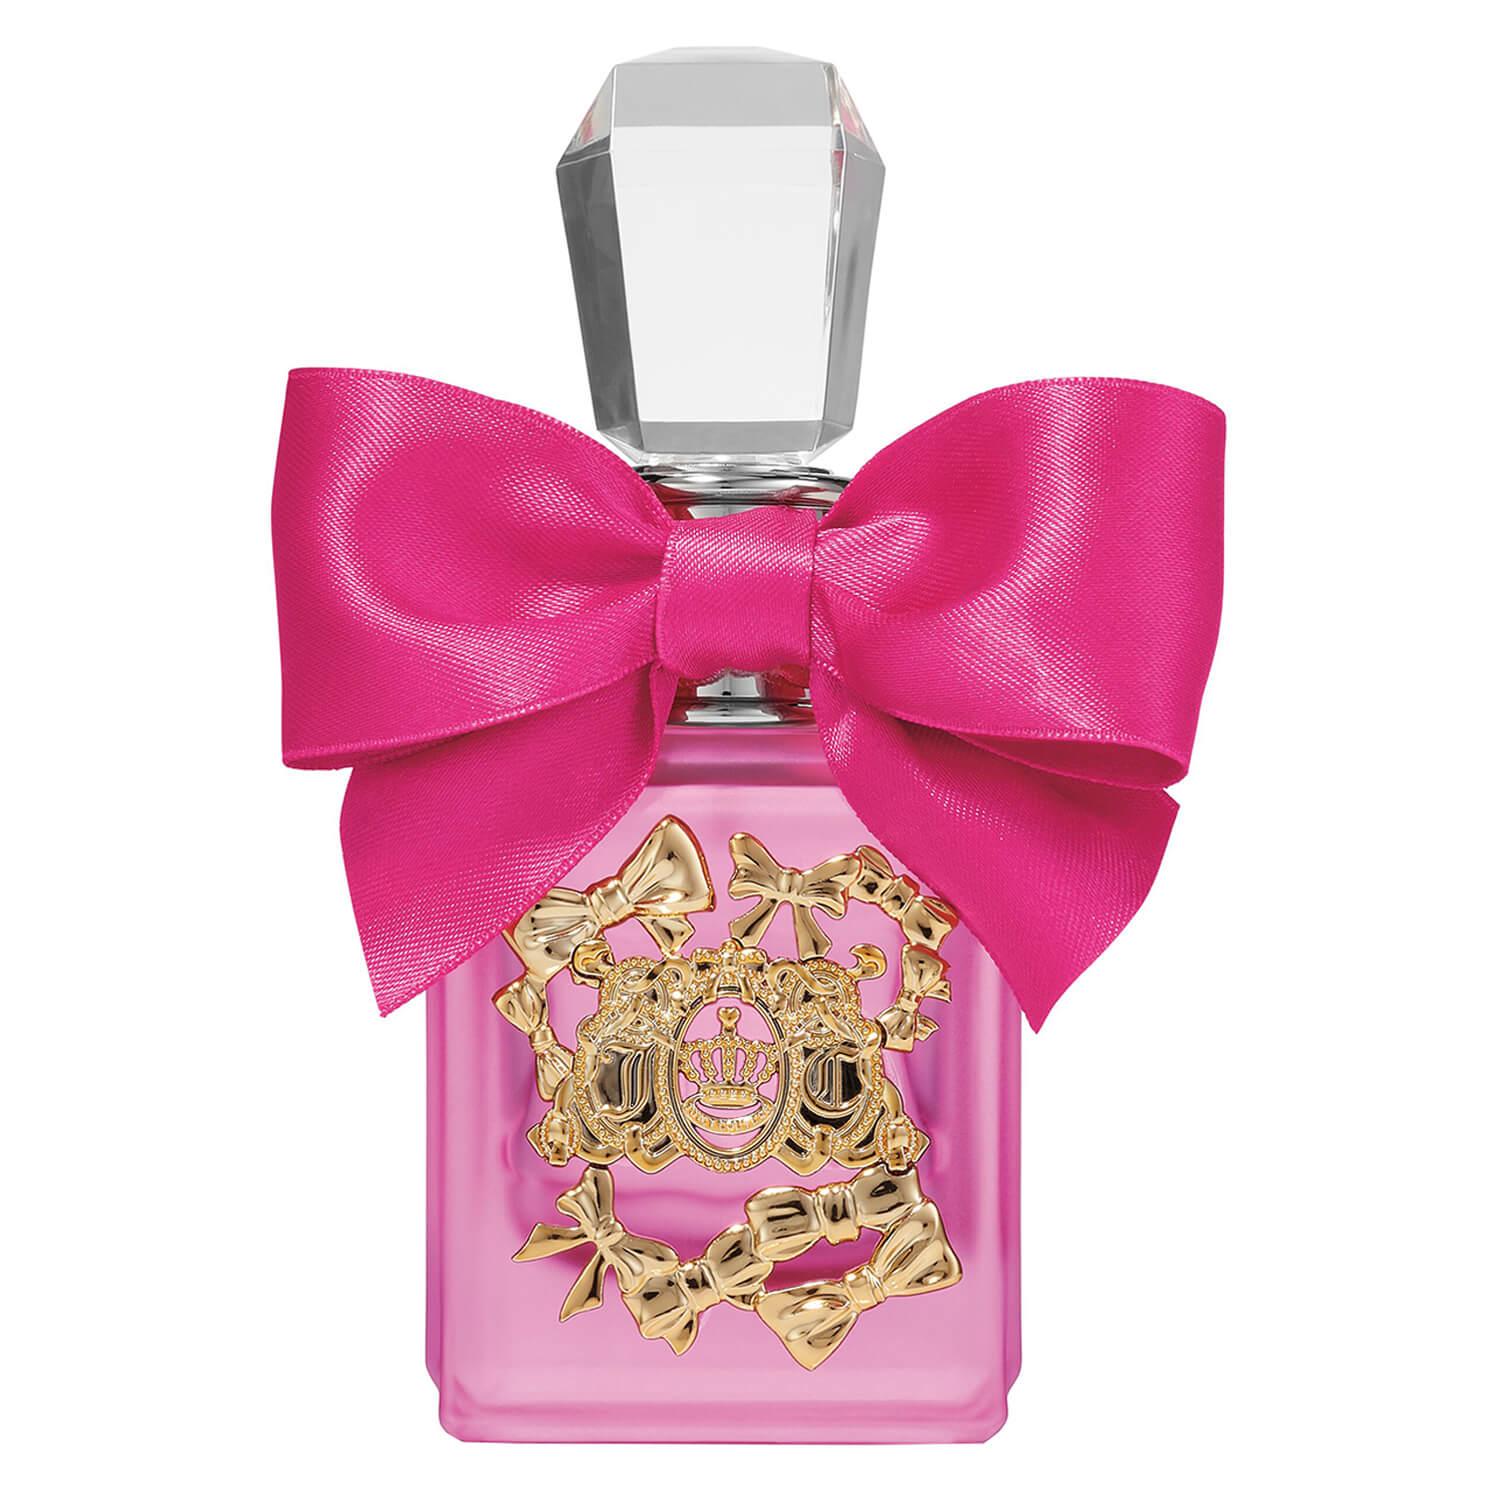 Juicy Couture - Viva la Juicy Pink Couture Eau de Parfum